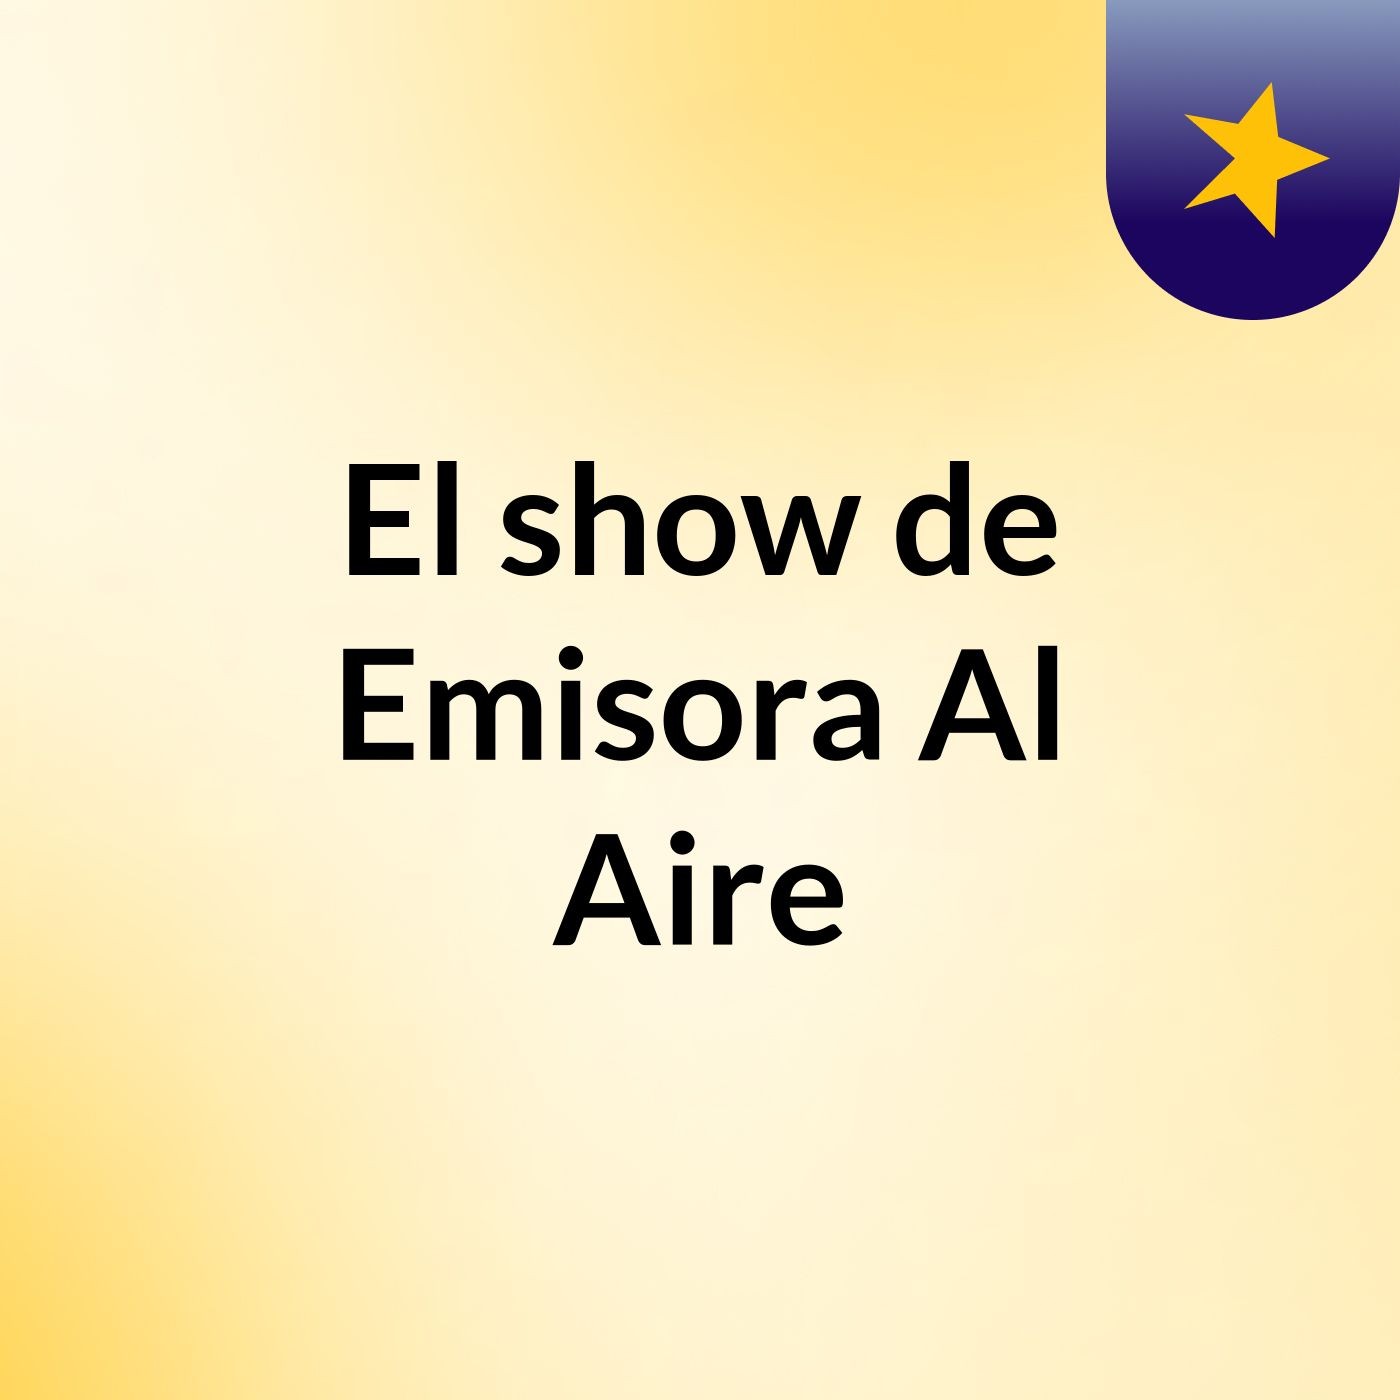 El show de Emisora Al Aire